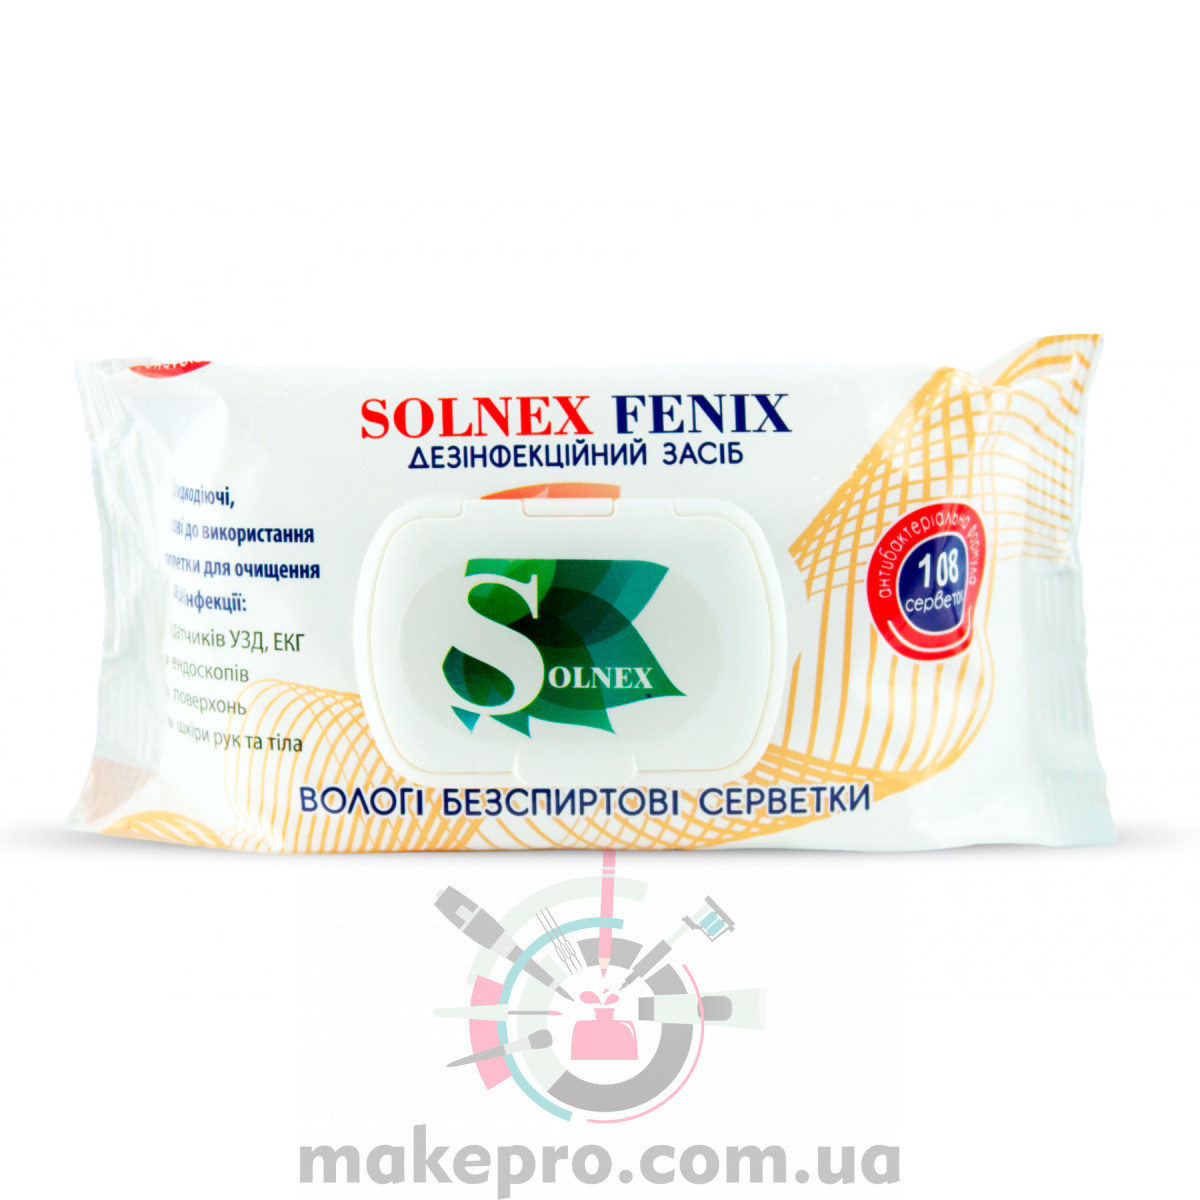 Серветки дезінфекційні безспиртові SOLNEX FENIX, 108 шт